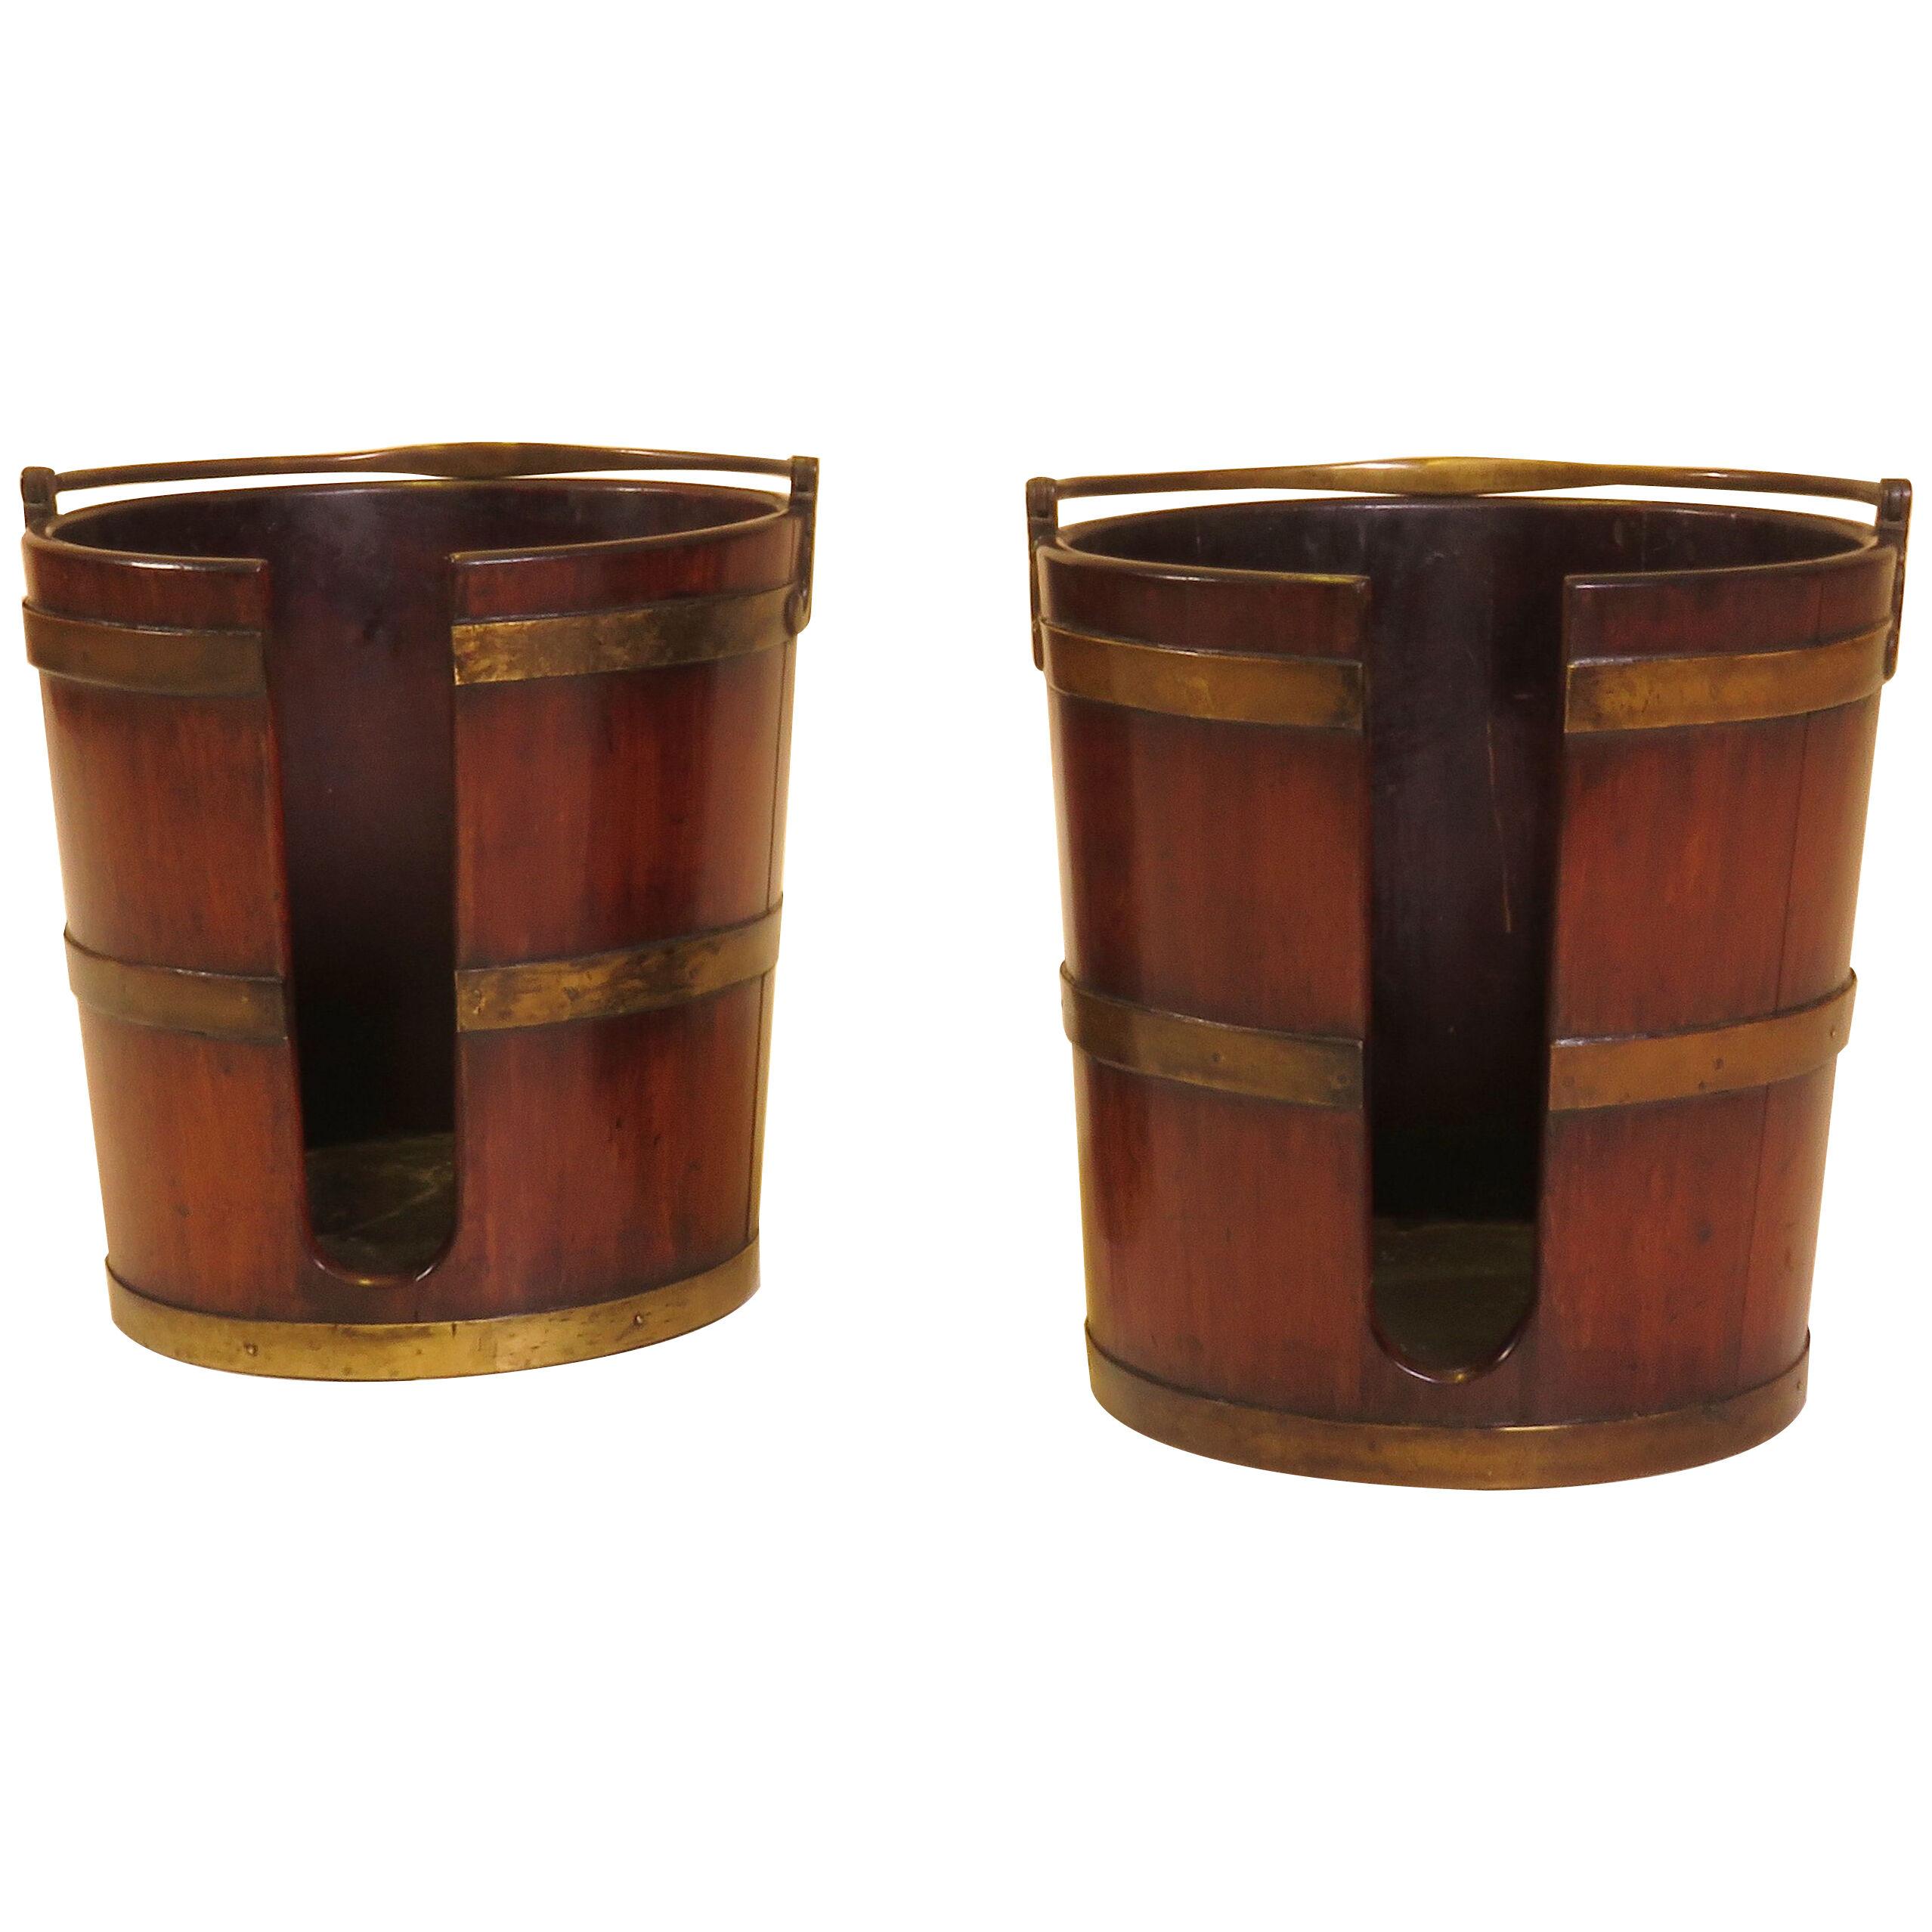 Pair of 18th Century Mahogany Plate Buckets